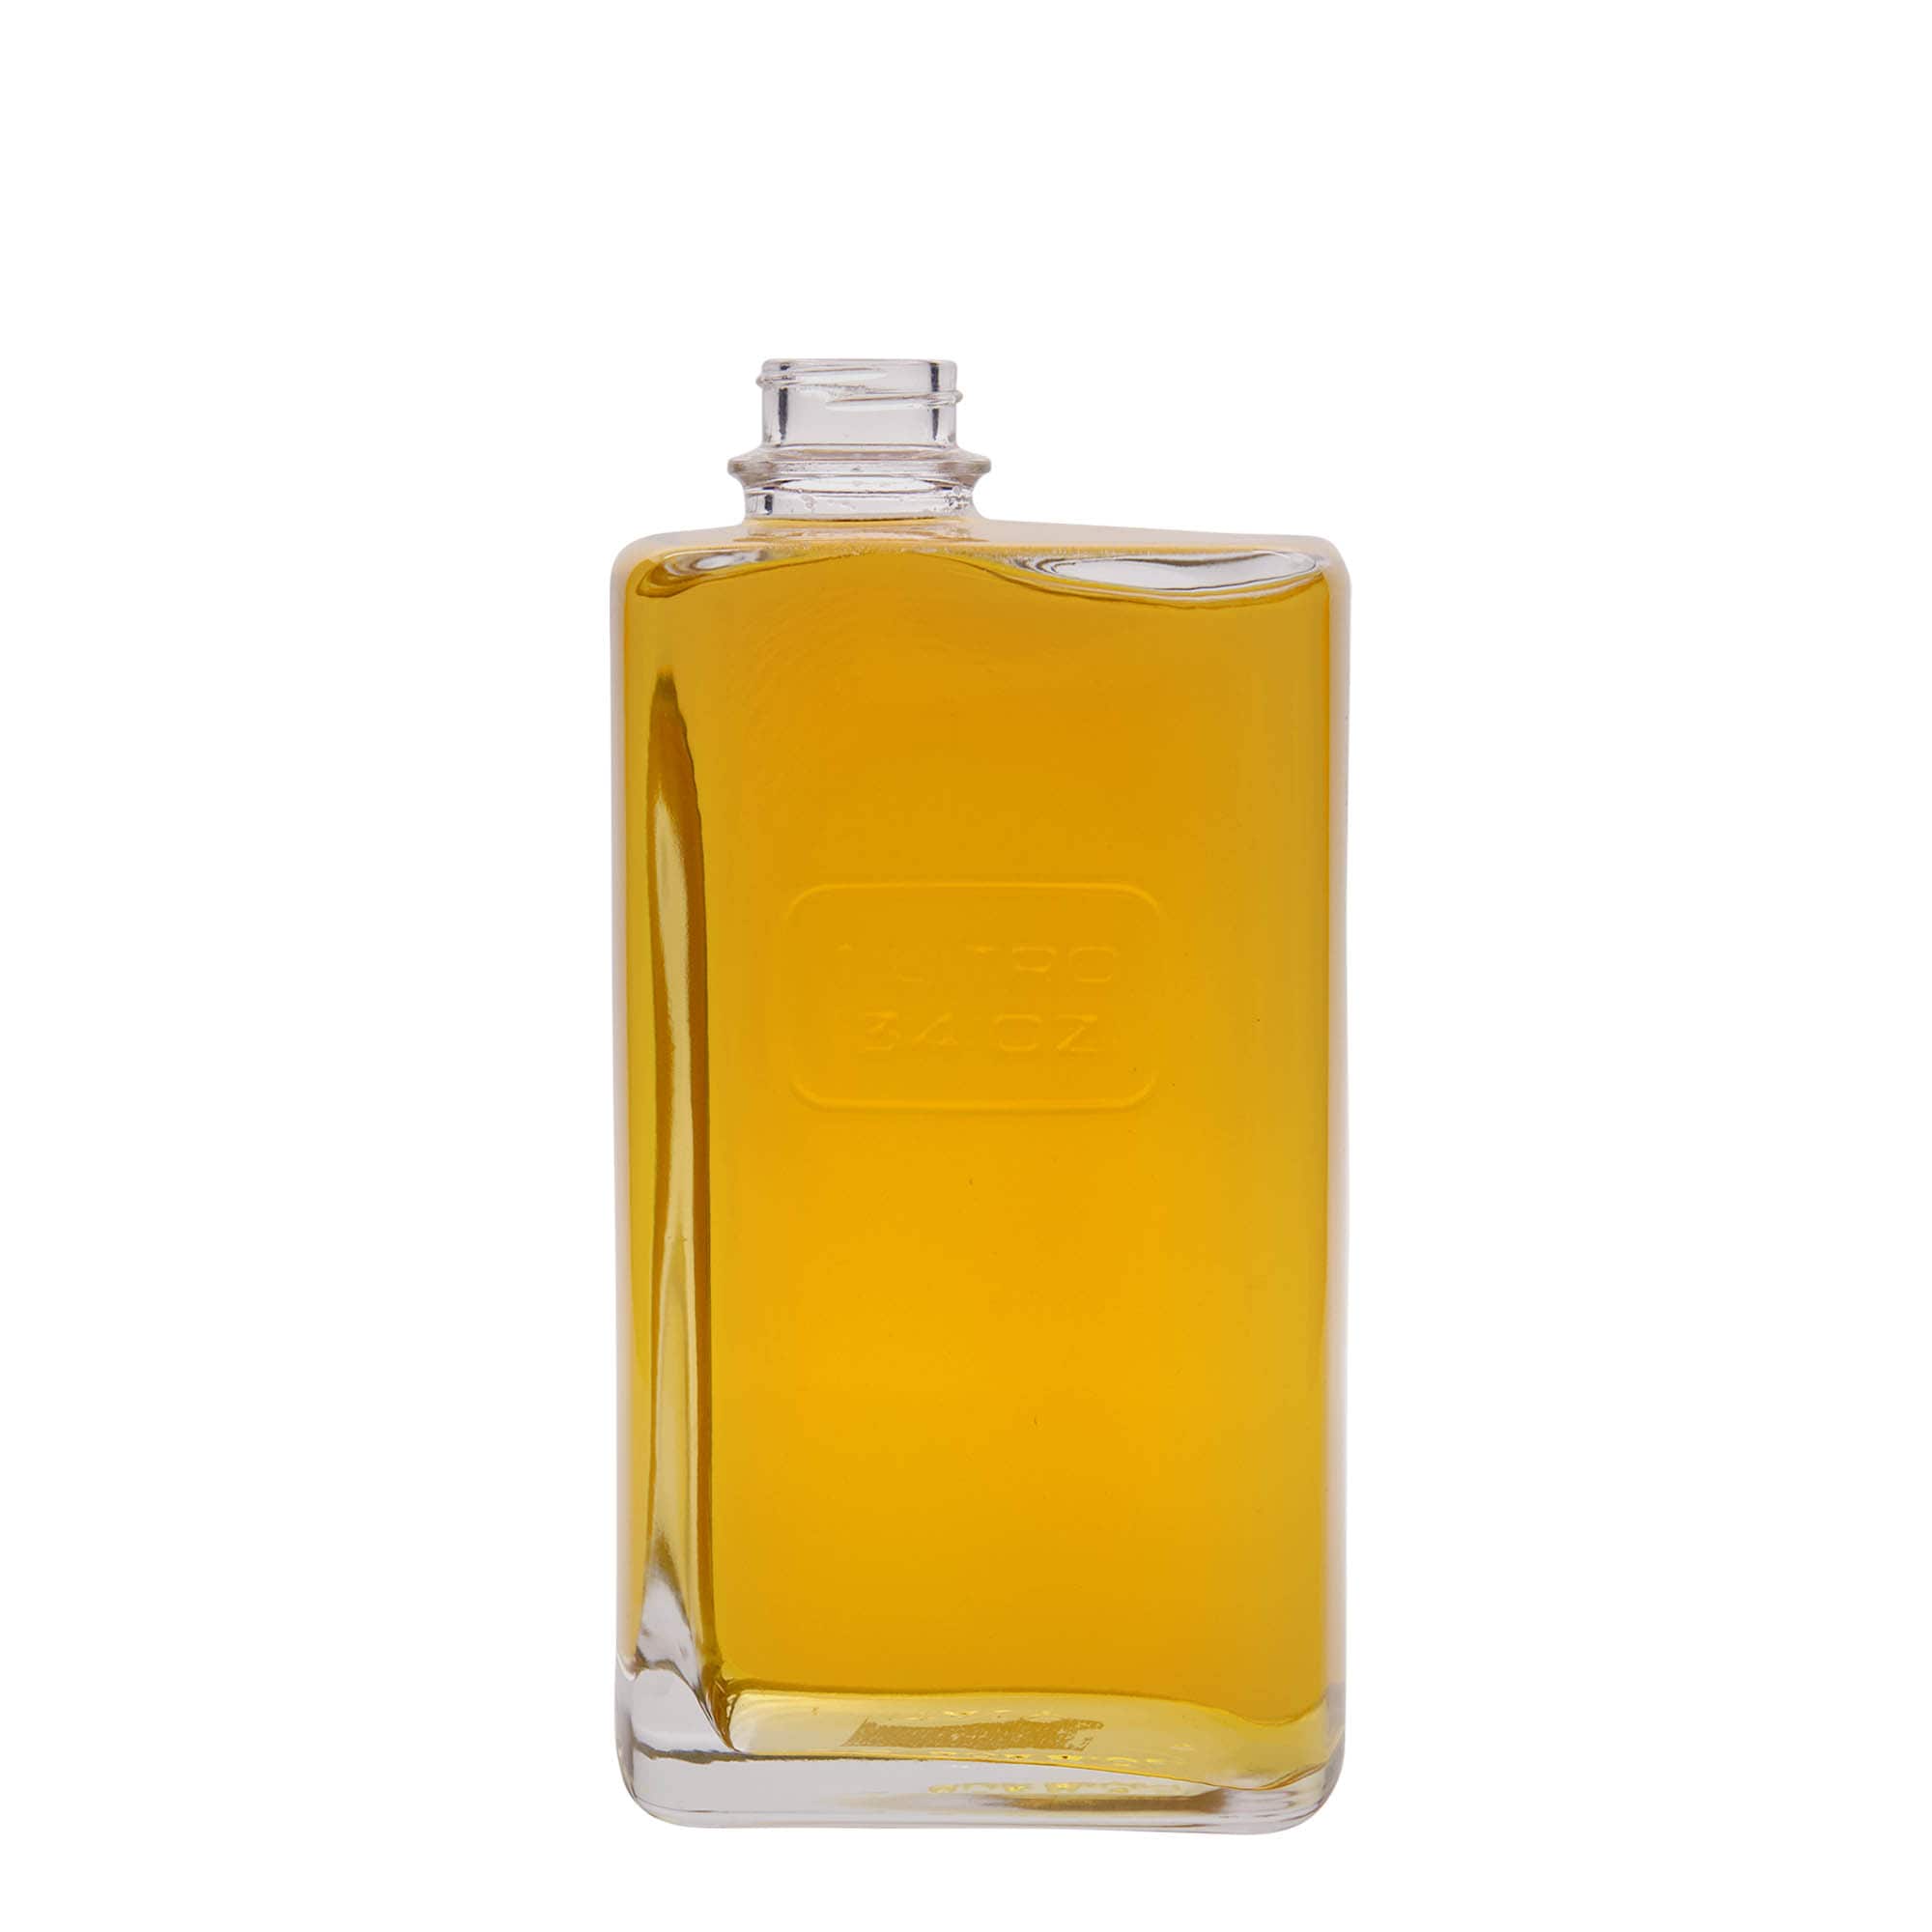 Botella de vidrio 'Optima Lattina' de 1000 ml, rectangular, boca: tapón de rosca